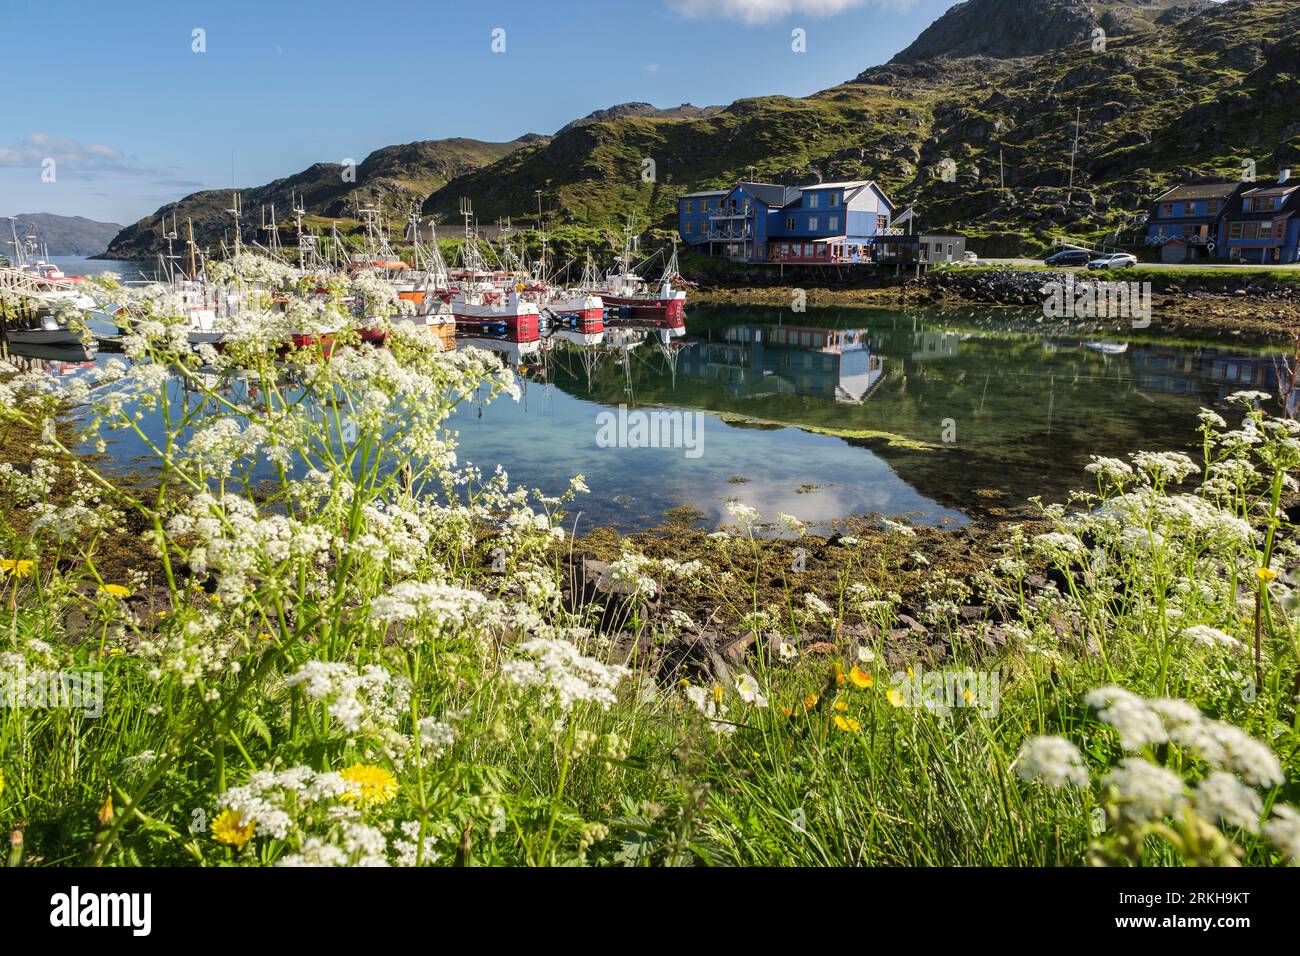 Bateaux amarrés dans le port du village de pêcheurs en été. Kamoyvaer, île de Magerøya, Honningsvar, Troms og Finnmark, Norvège, Scandinavie Banque D'Images